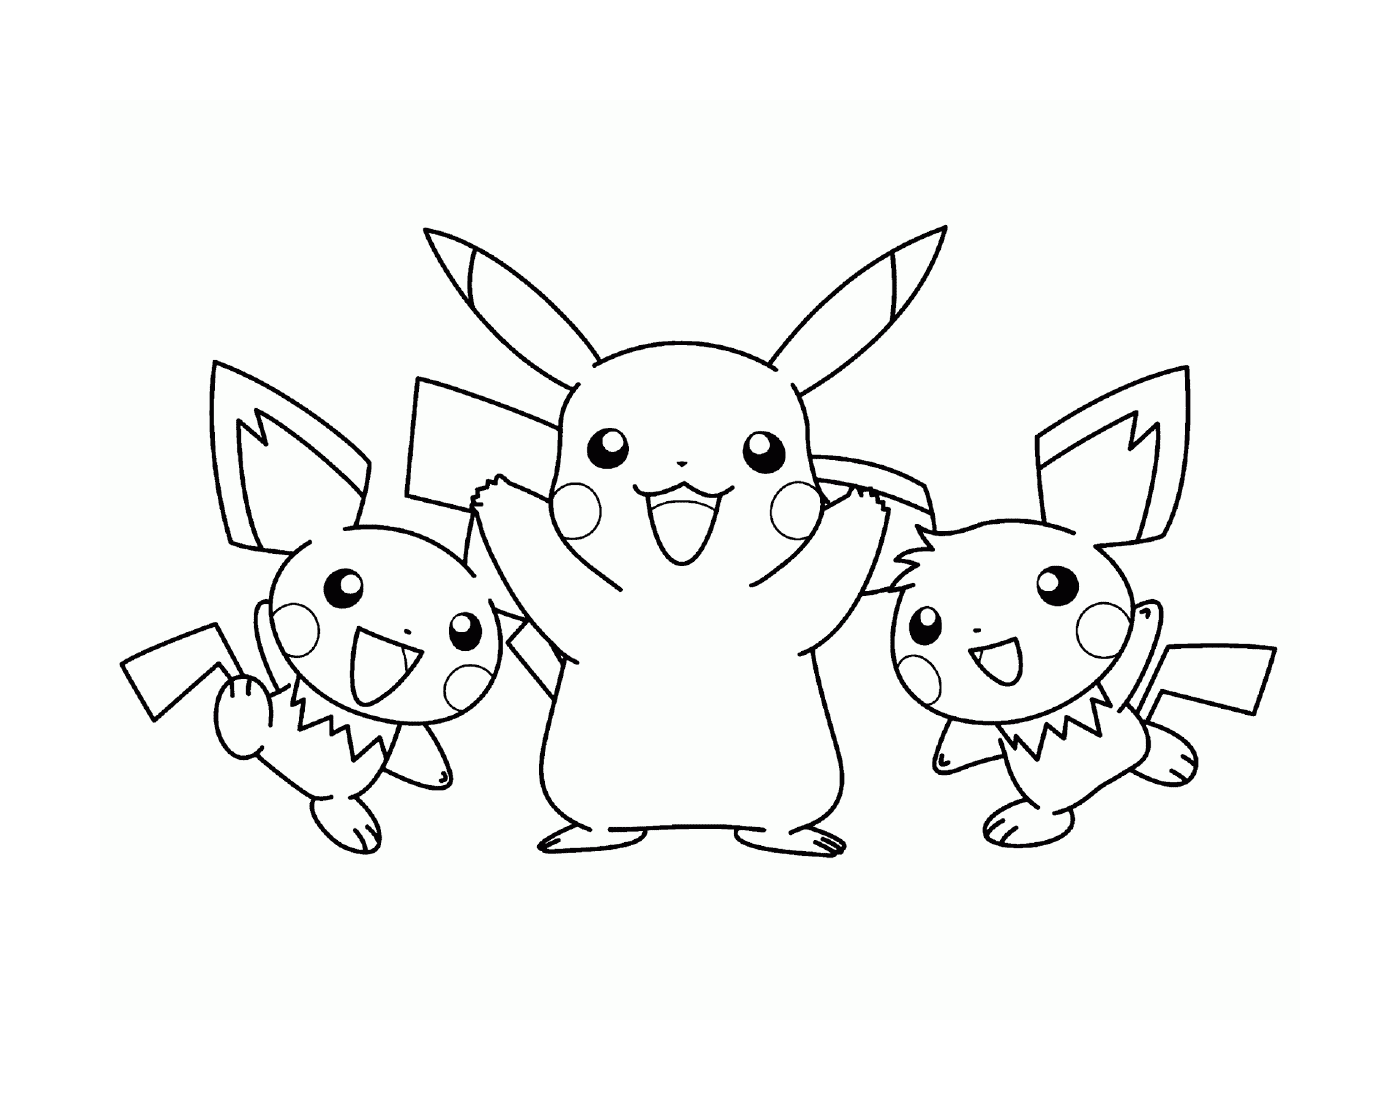  Três Pikachus juntos 